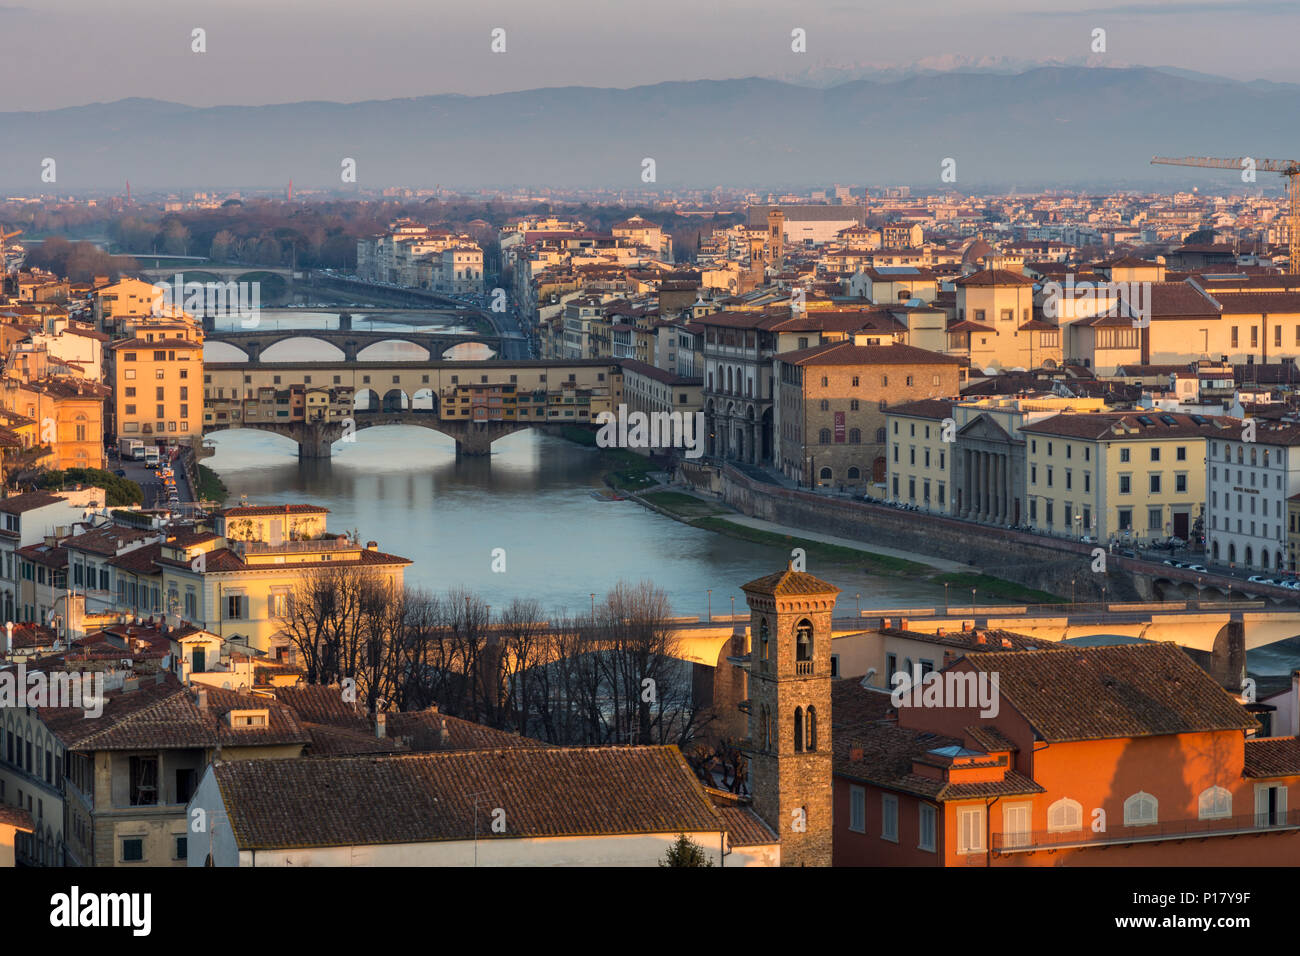 Florenz, Italien - 24. März 2018: Morgenlicht leuchtet das Stadtbild von Florenz an den Ufern des Flusses Arno, einschließlich der Sehenswürdigkeiten Ponte Vecchio bridg Stockfoto